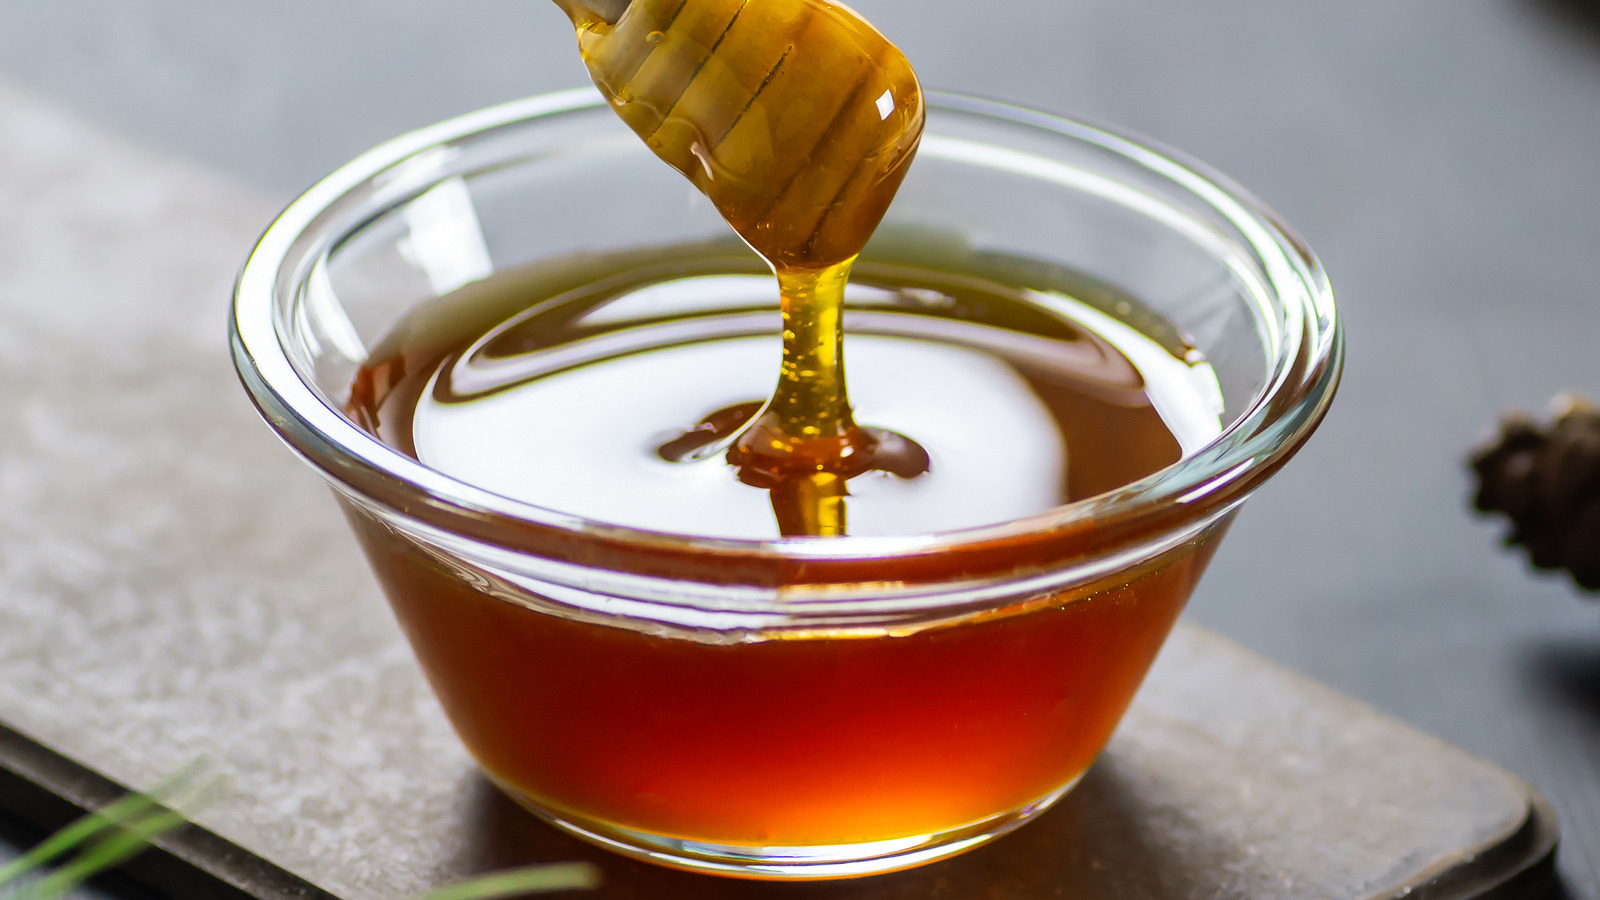 What Makes This Rare Italian Honey So Unique